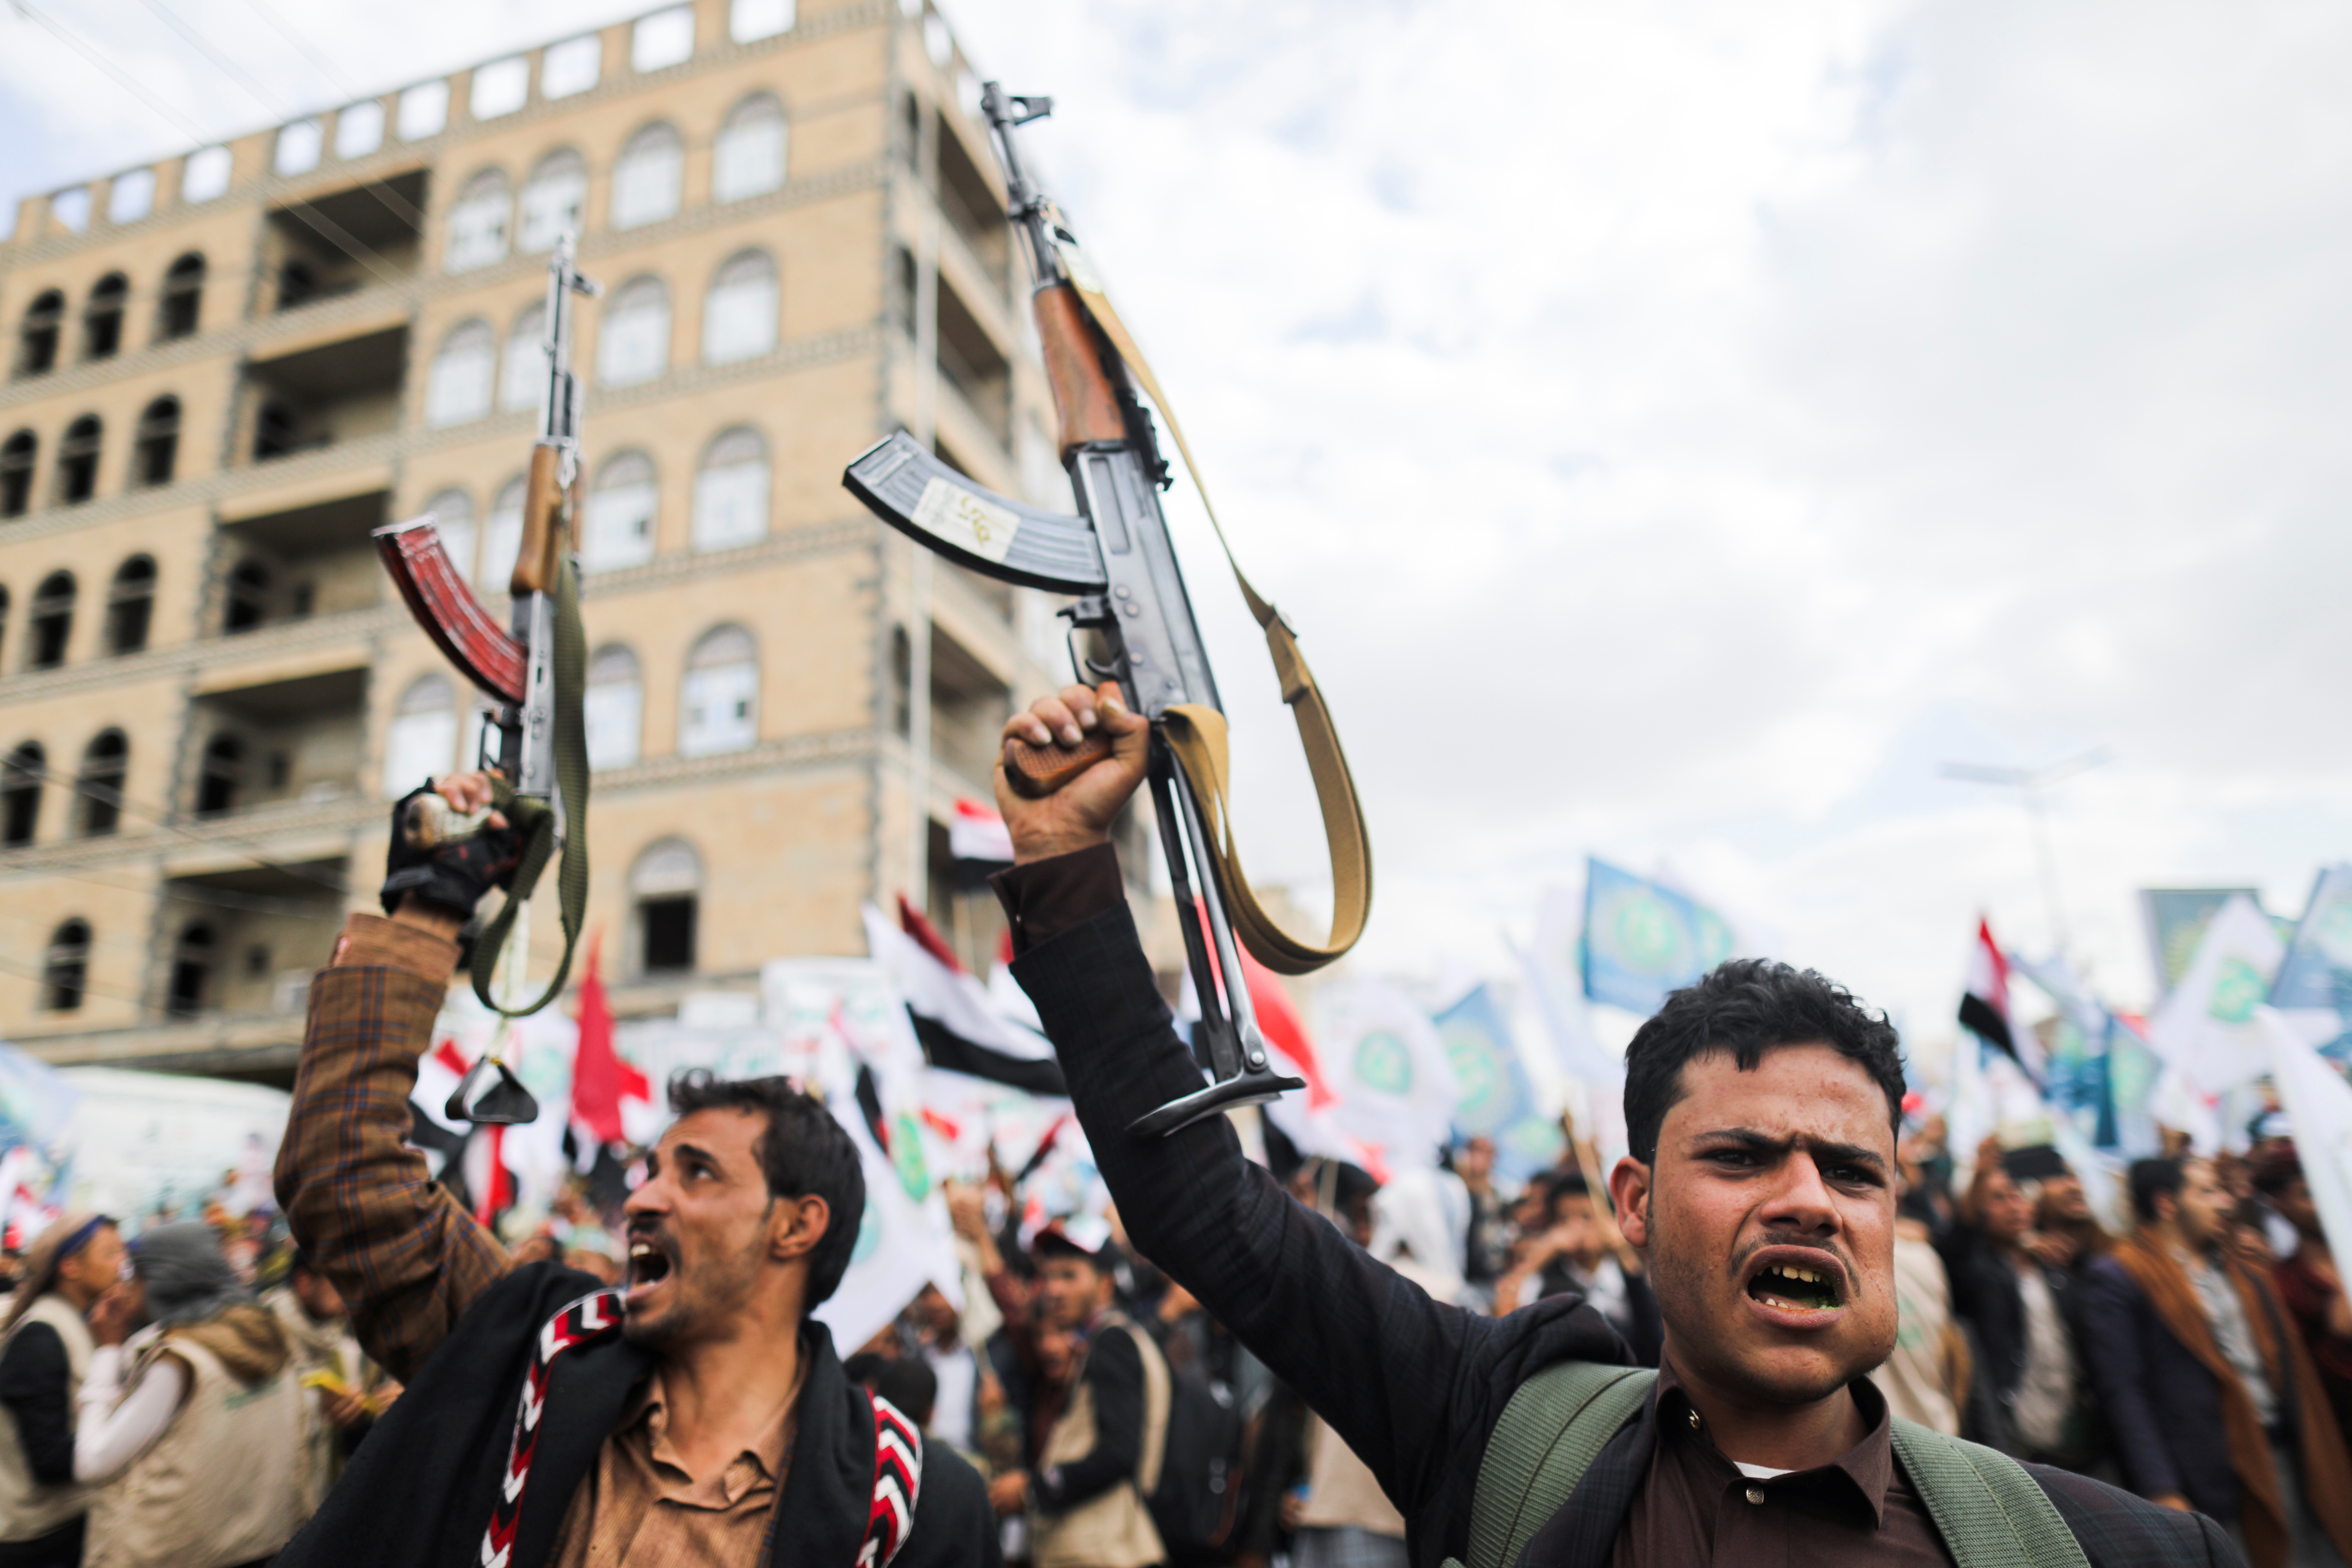 Rebeldes Houthis celebrando después de un avance de sus fuerzas mientras mascan qat, una droga euforizante que consume la mayor parte de la población. REUTERS/Khaled Abdullah